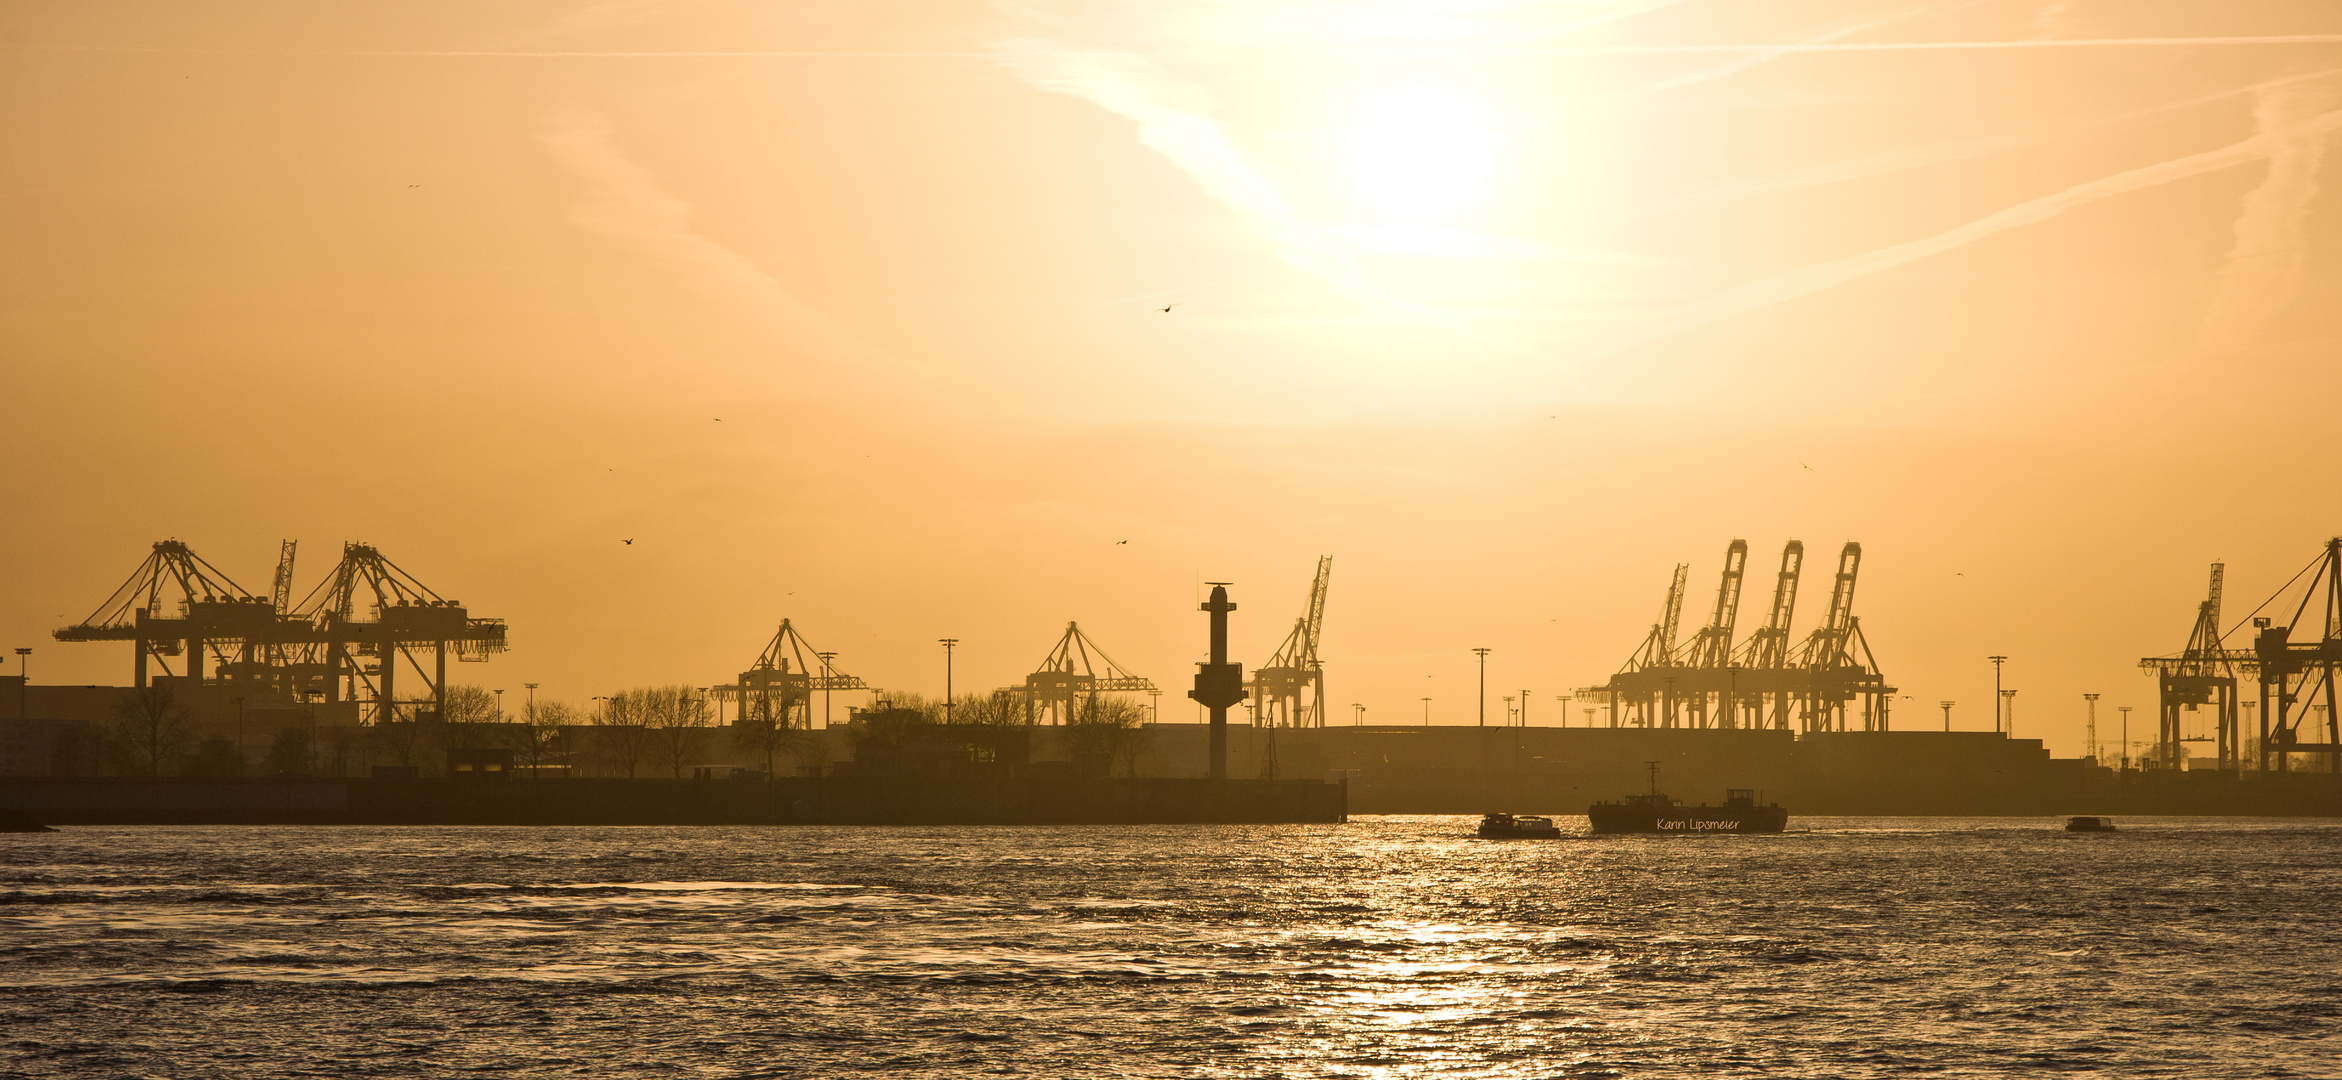 der Hamburger Hafen in der Abendsonne